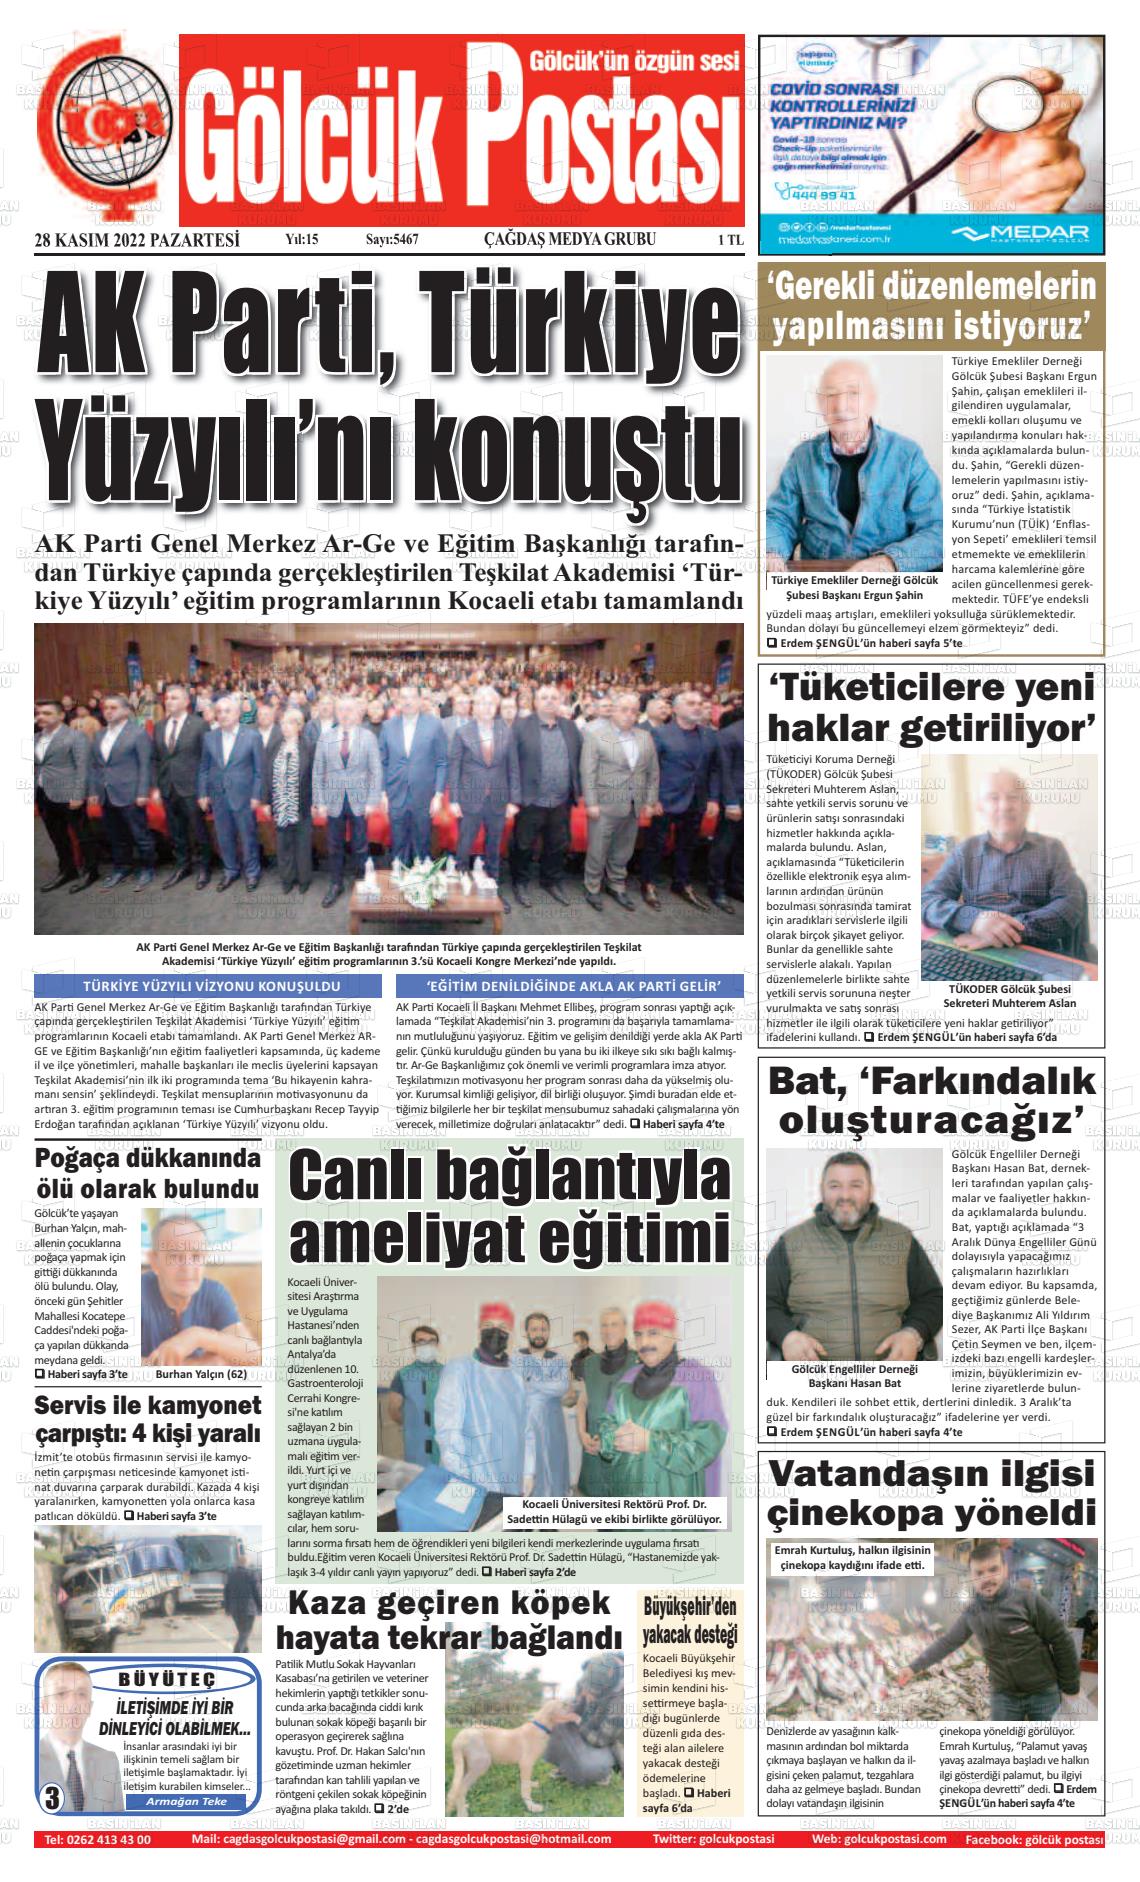 28 Kasım 2022 Gölcük Postasi Gazete Manşeti